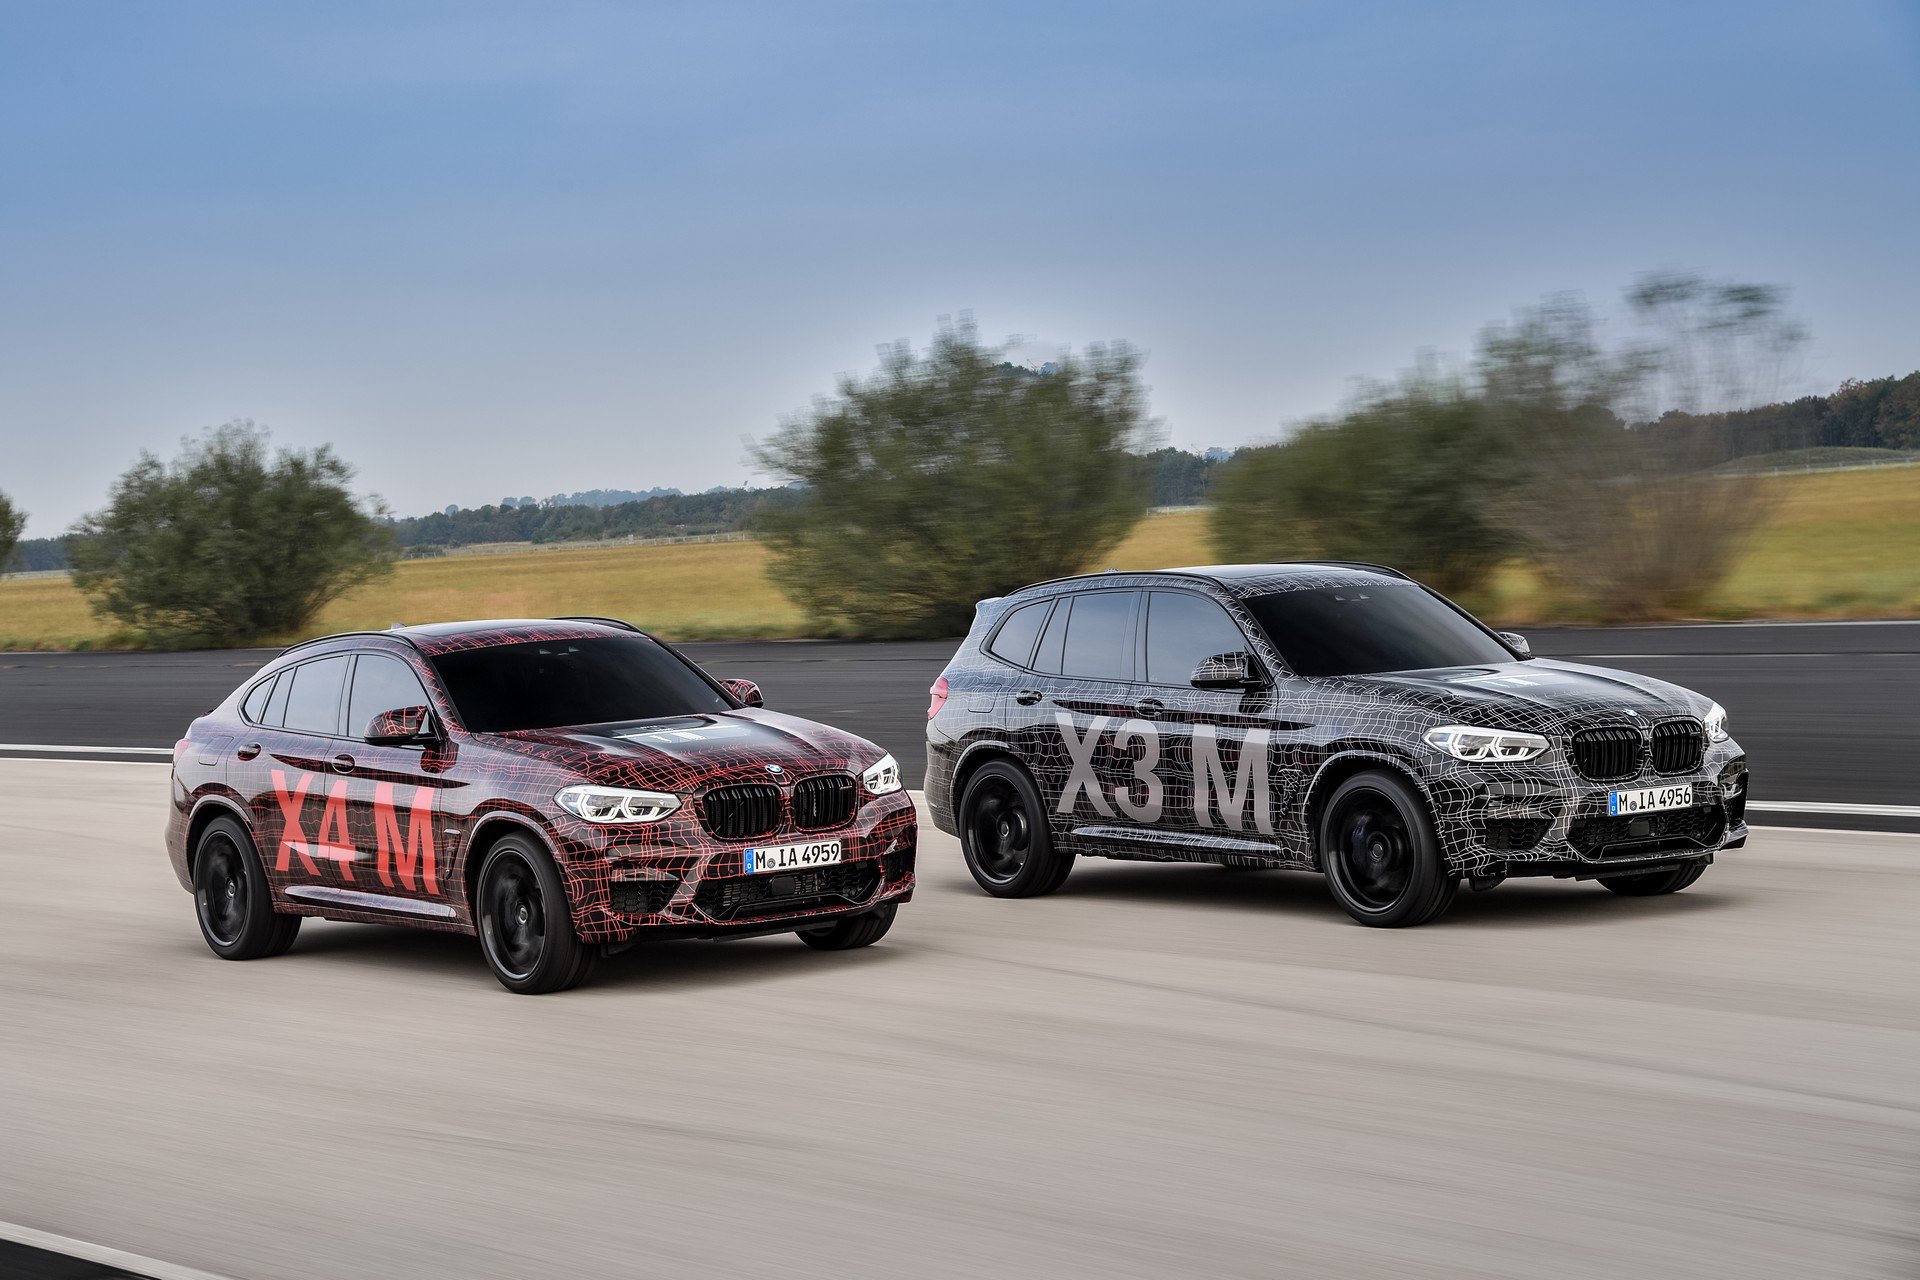 BMW X3 M y X4 M: los más deportivos están en camino